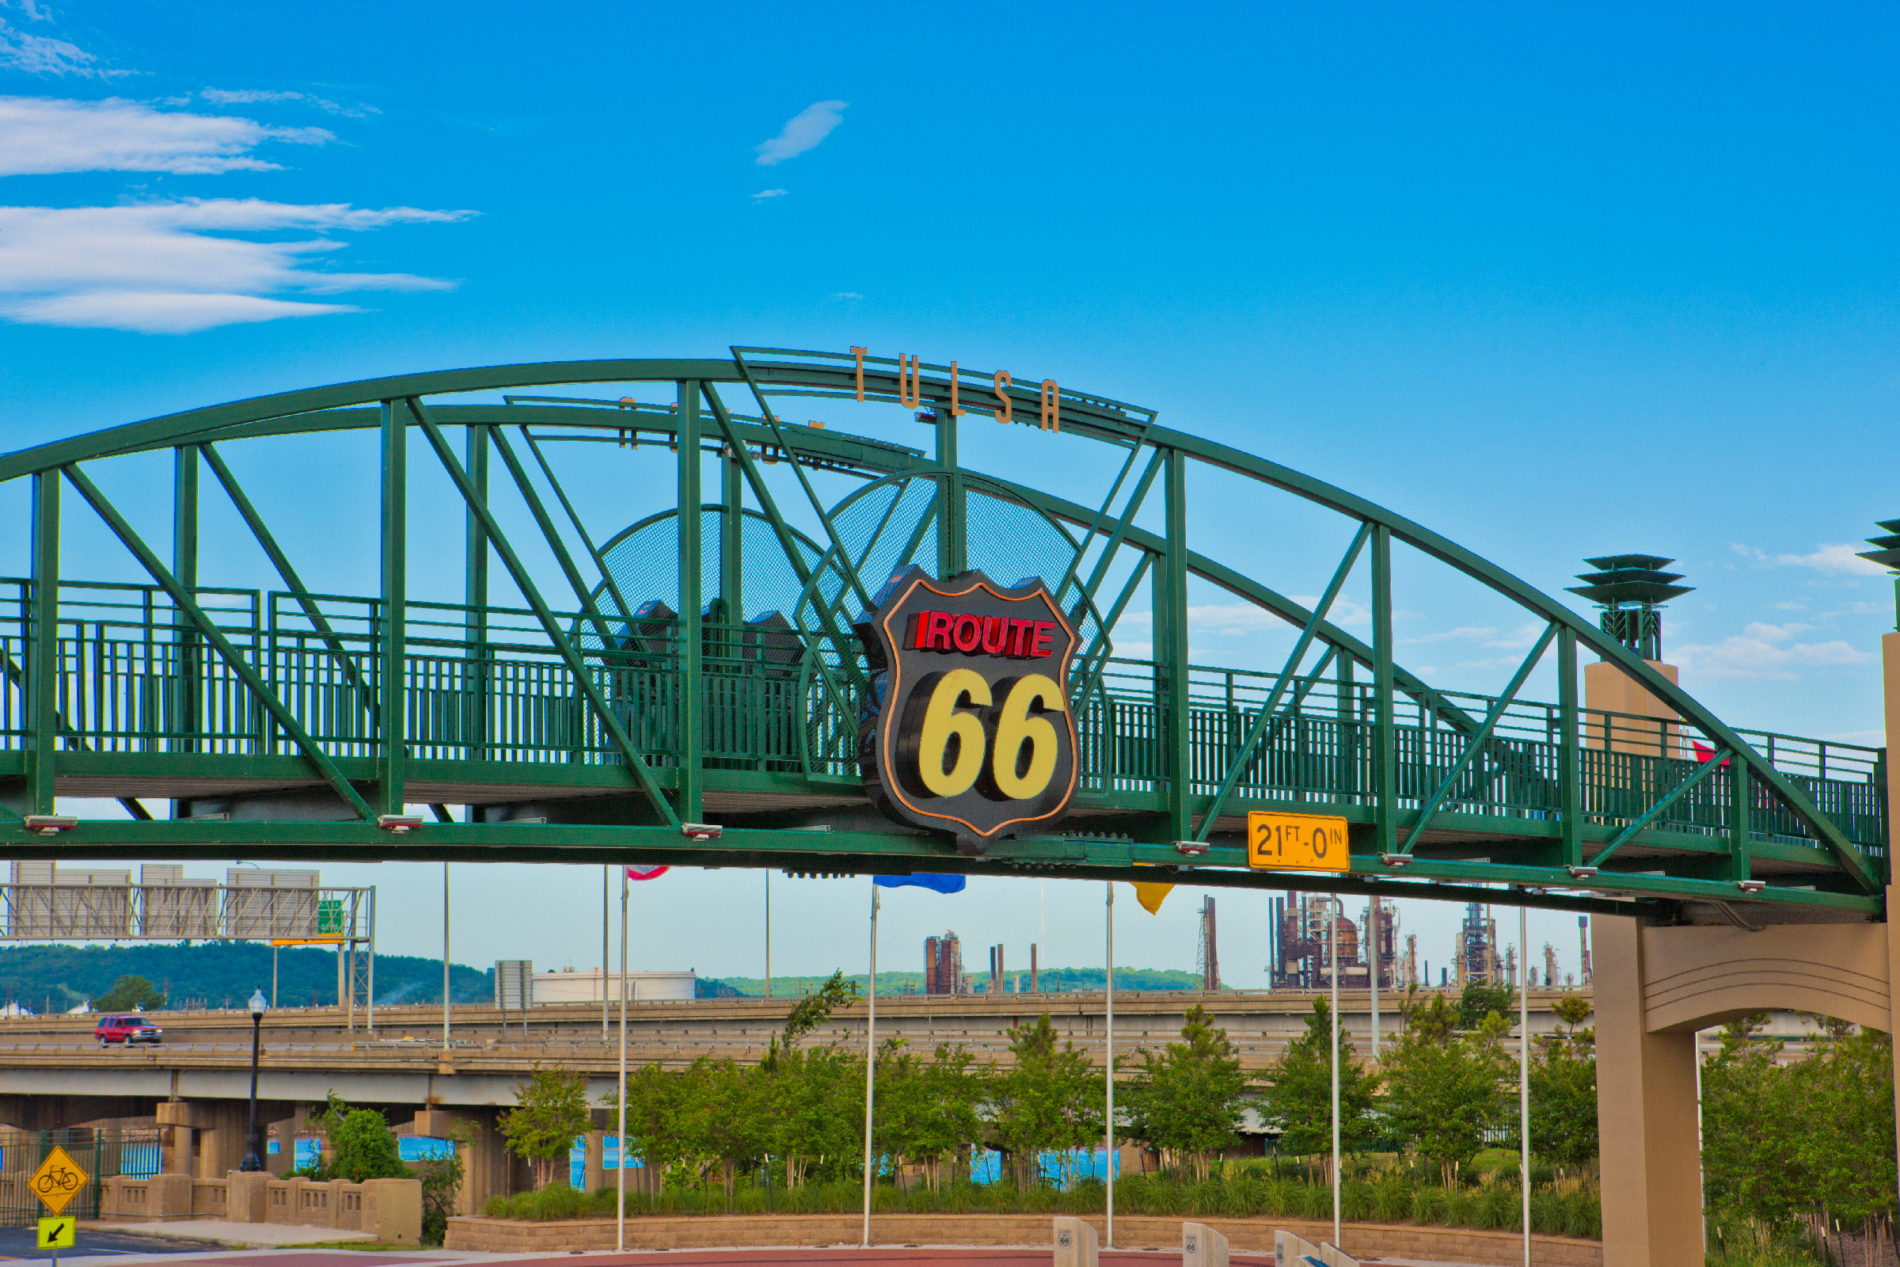 Route 66 bridge in Tulsa